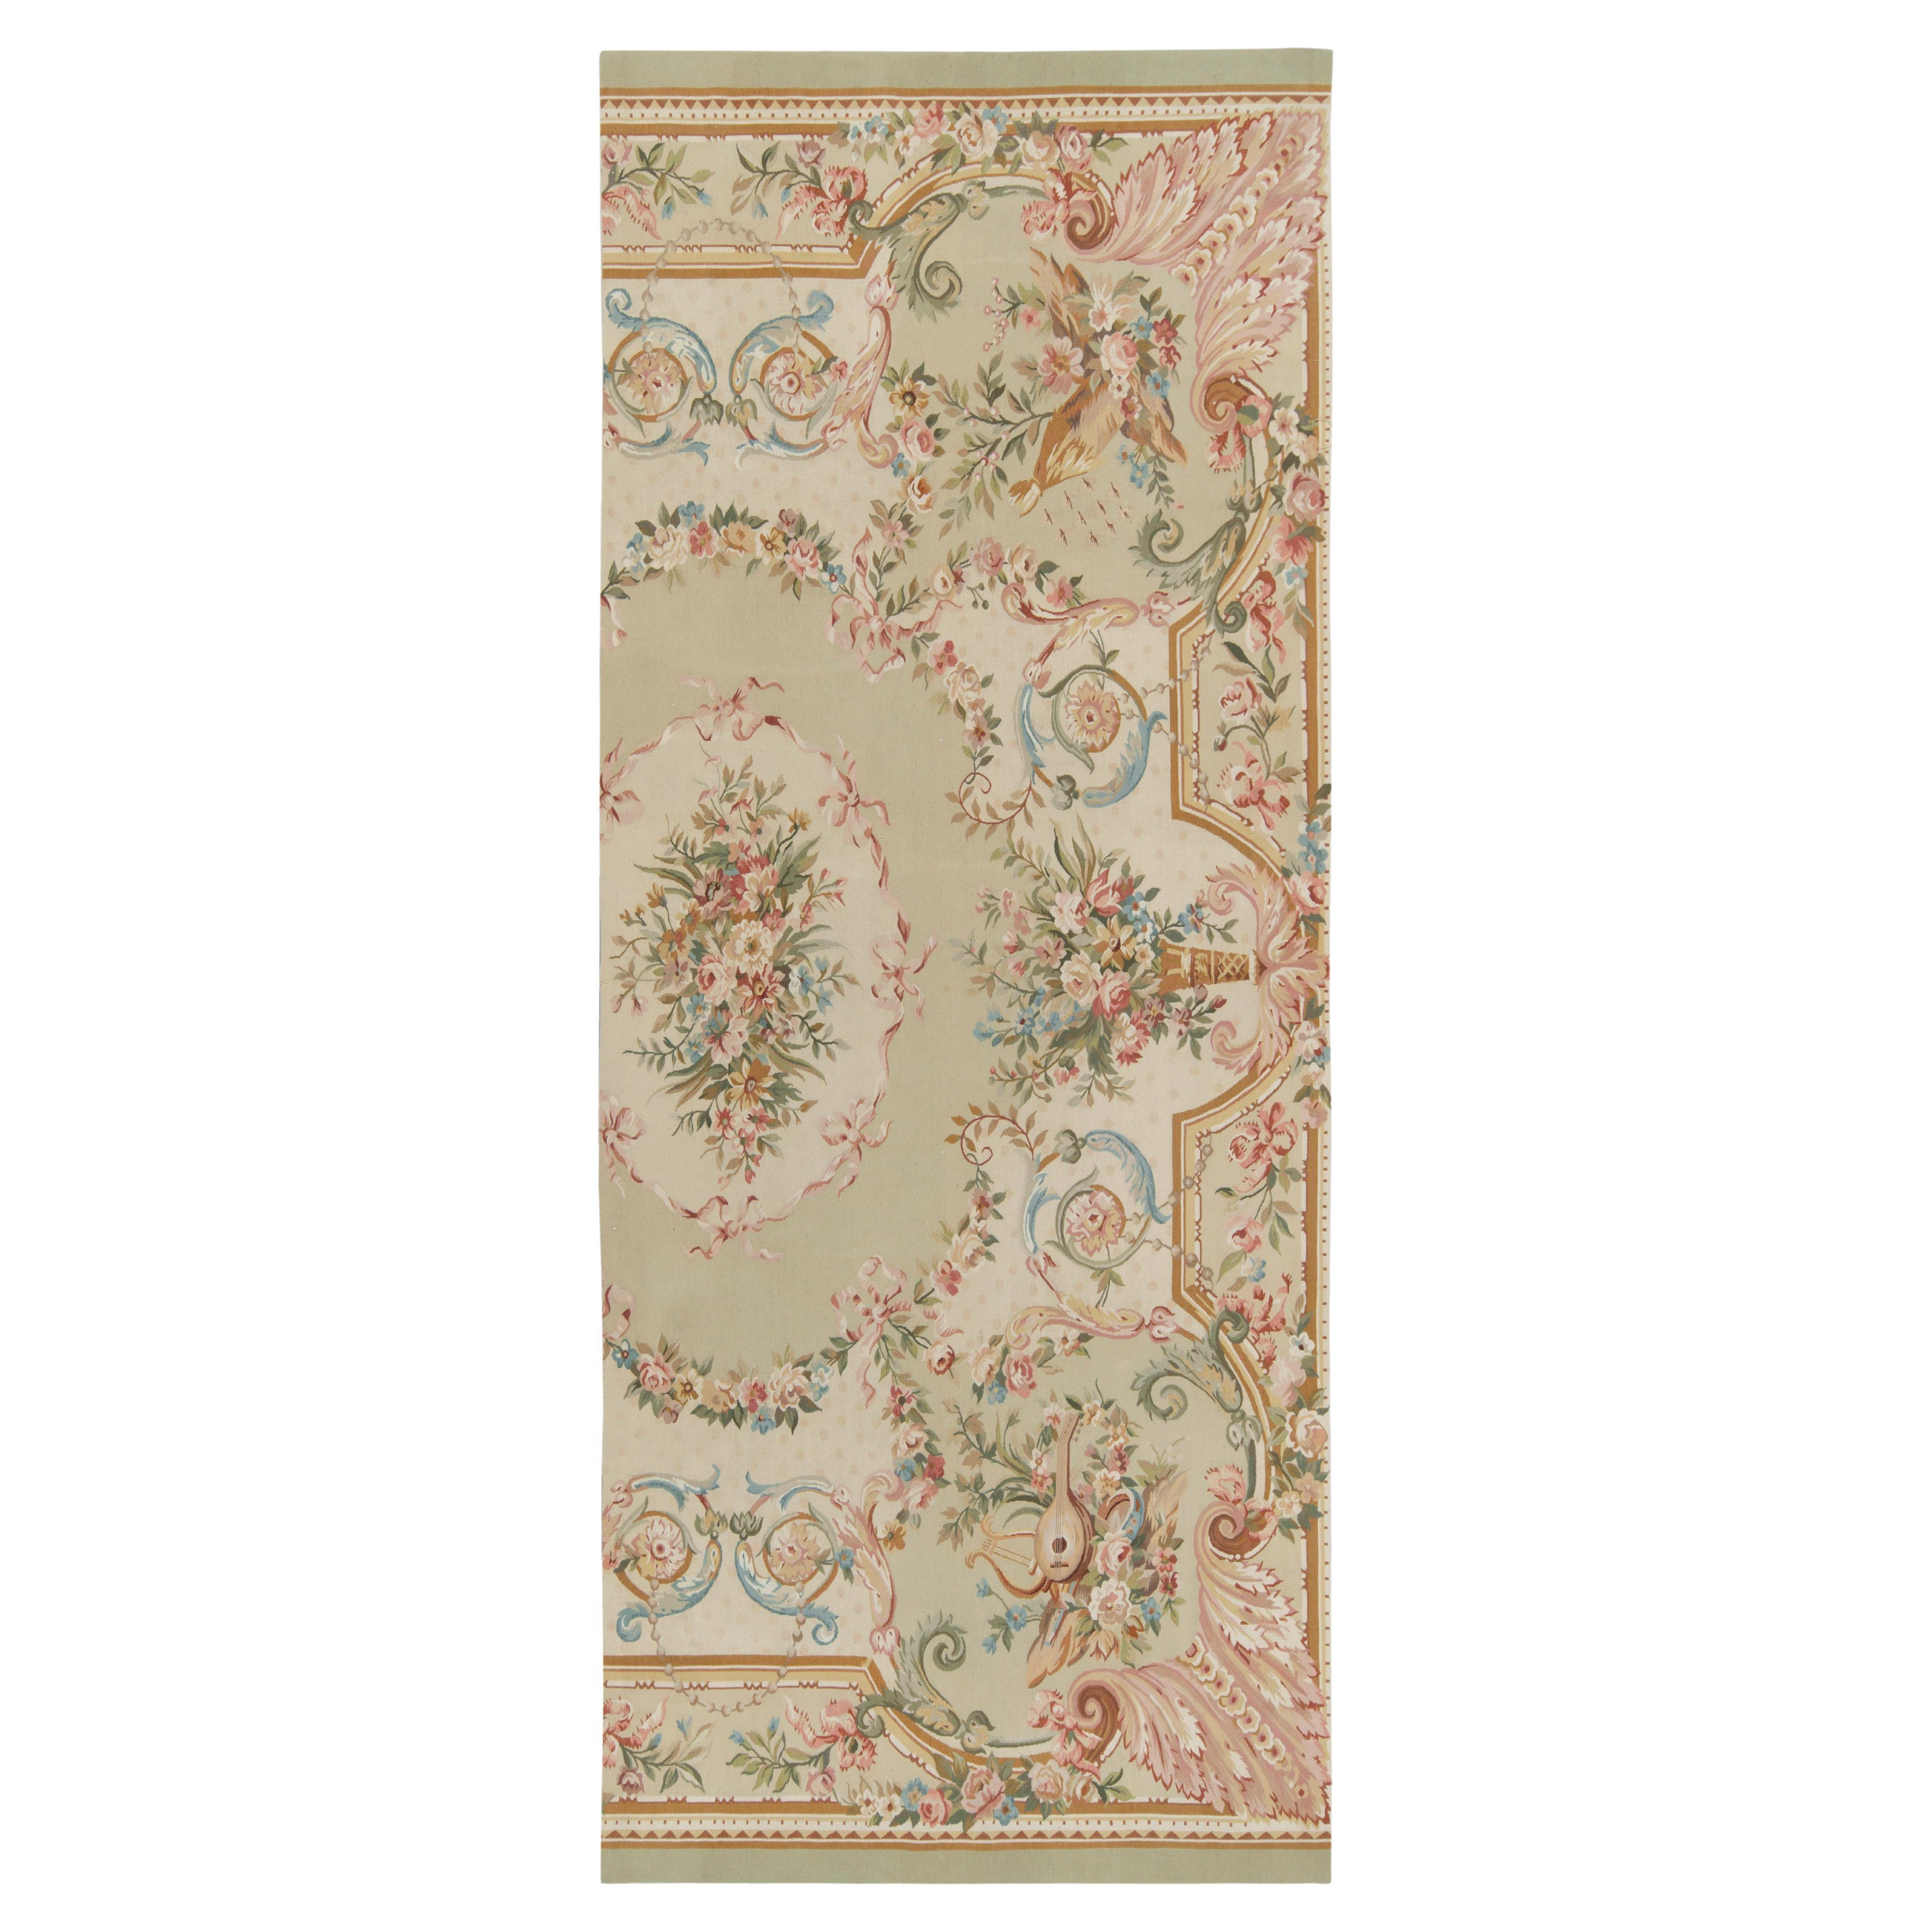 Tapis et tapis à fleurs vert, rose et beige de style Aubusson tissé à la main de Kilim